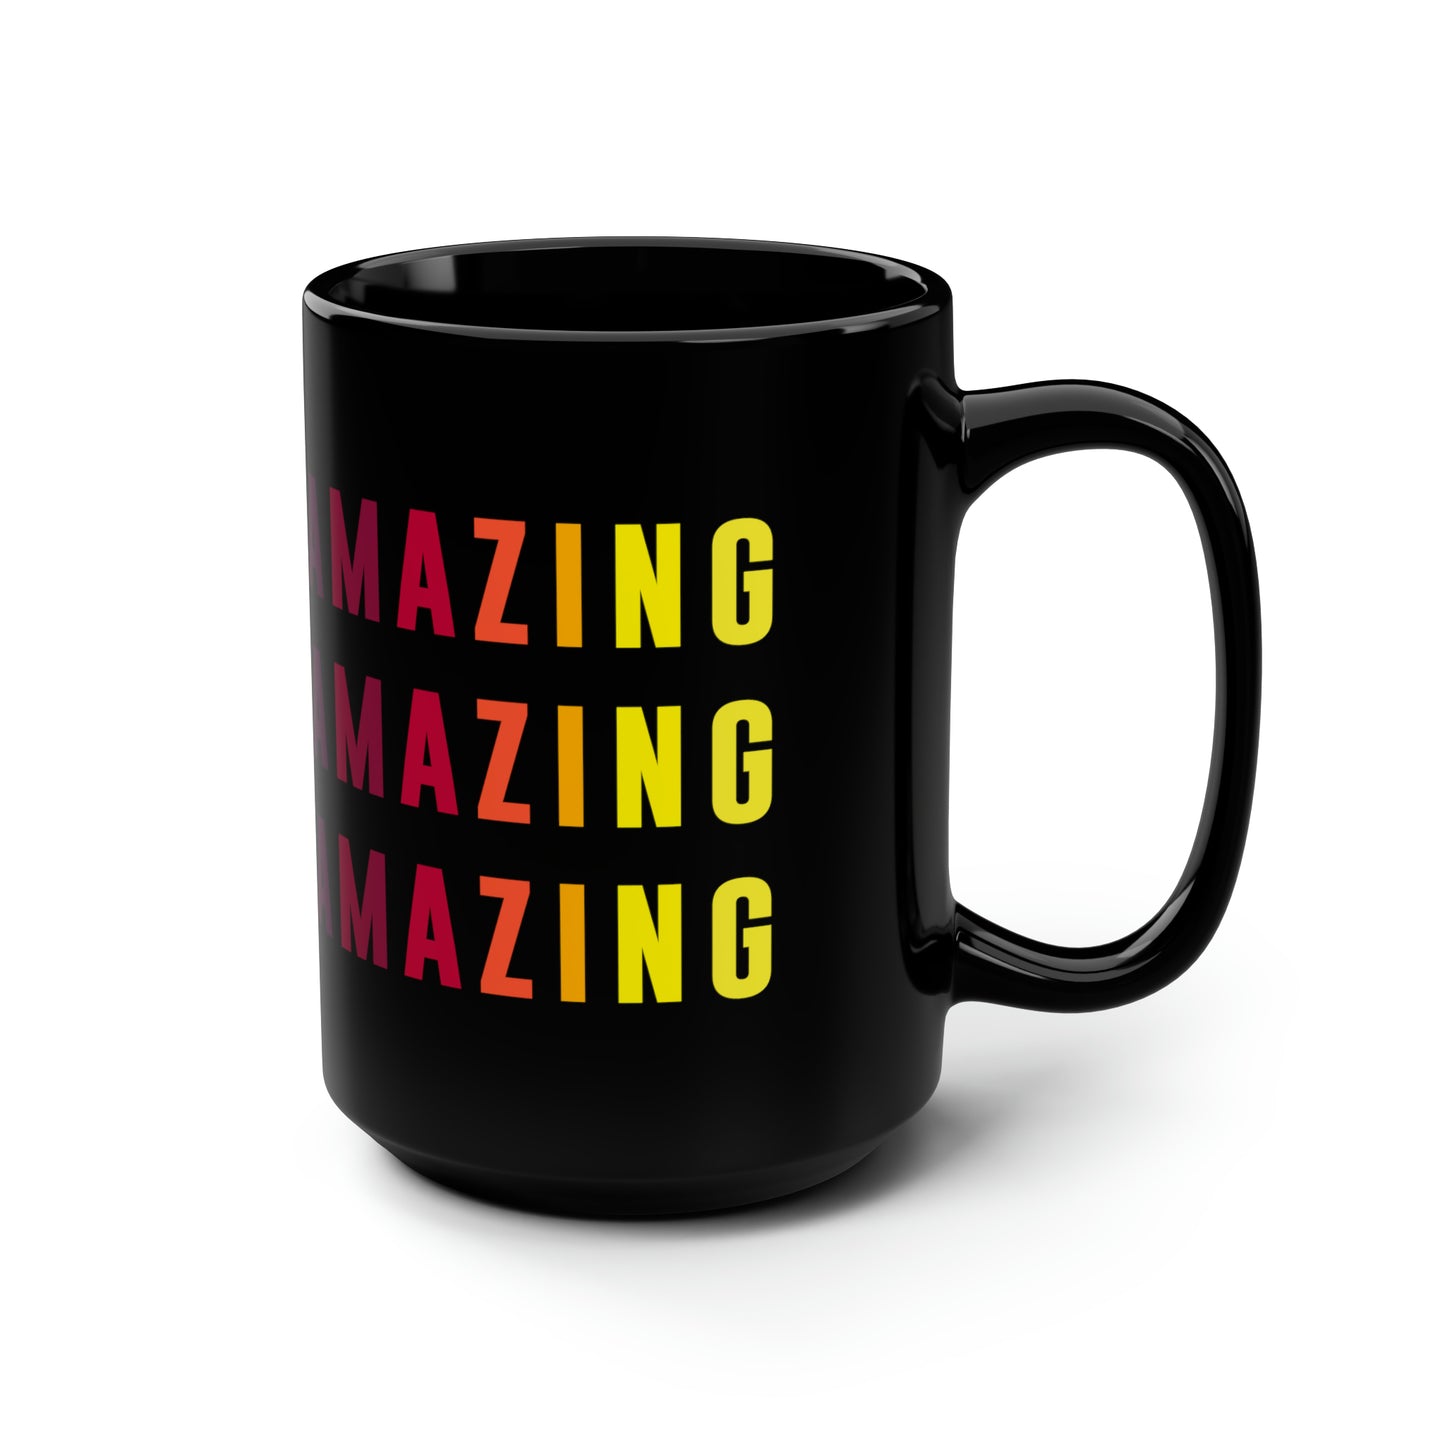 Amazing - Black Mug, 15oz